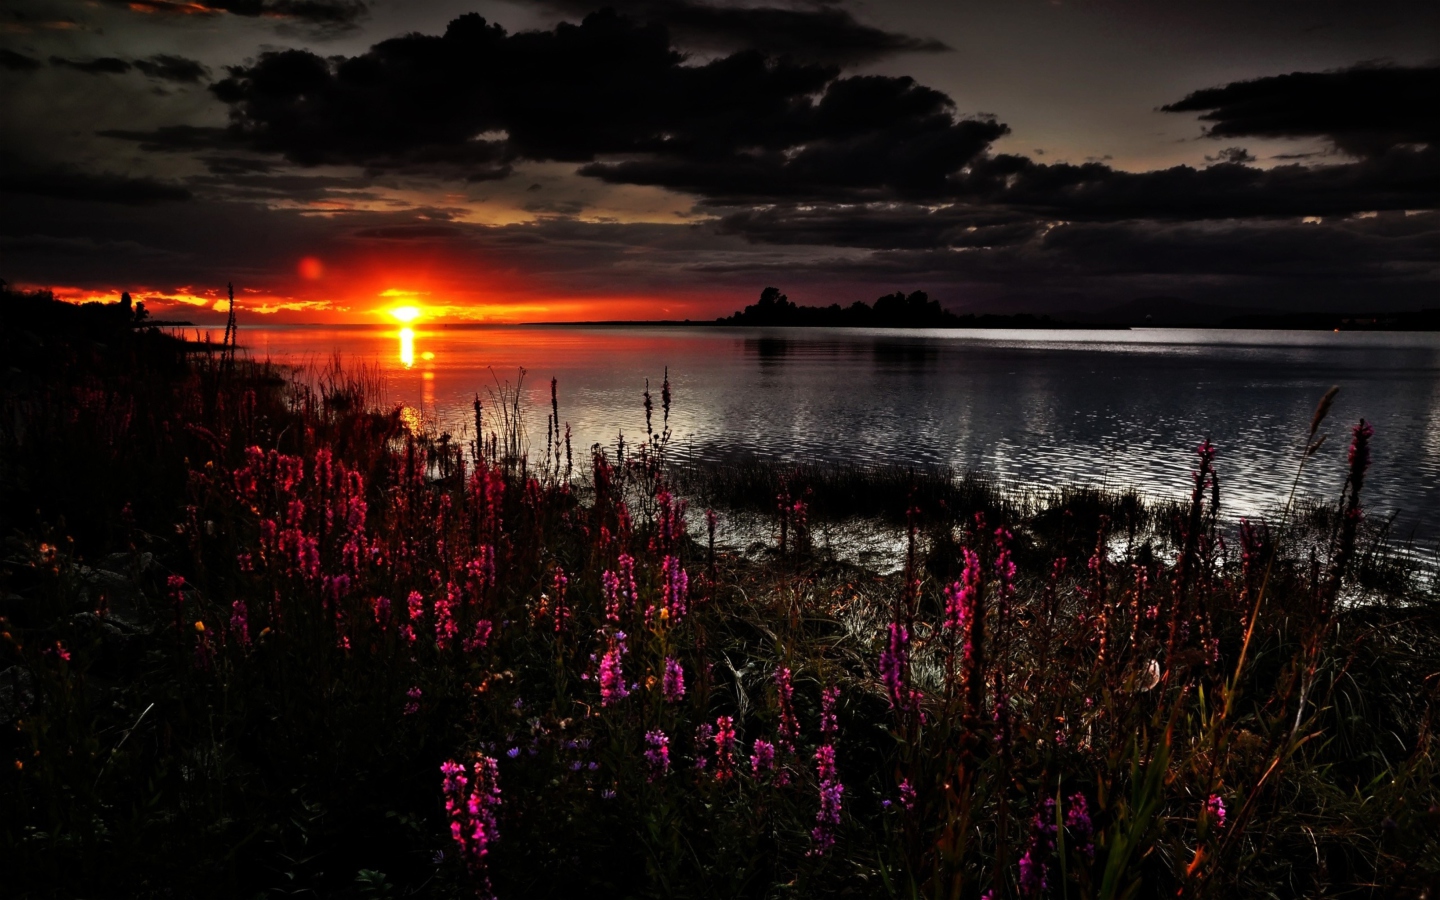 Sfondi Flowers And Lake At Sunset 1440x900